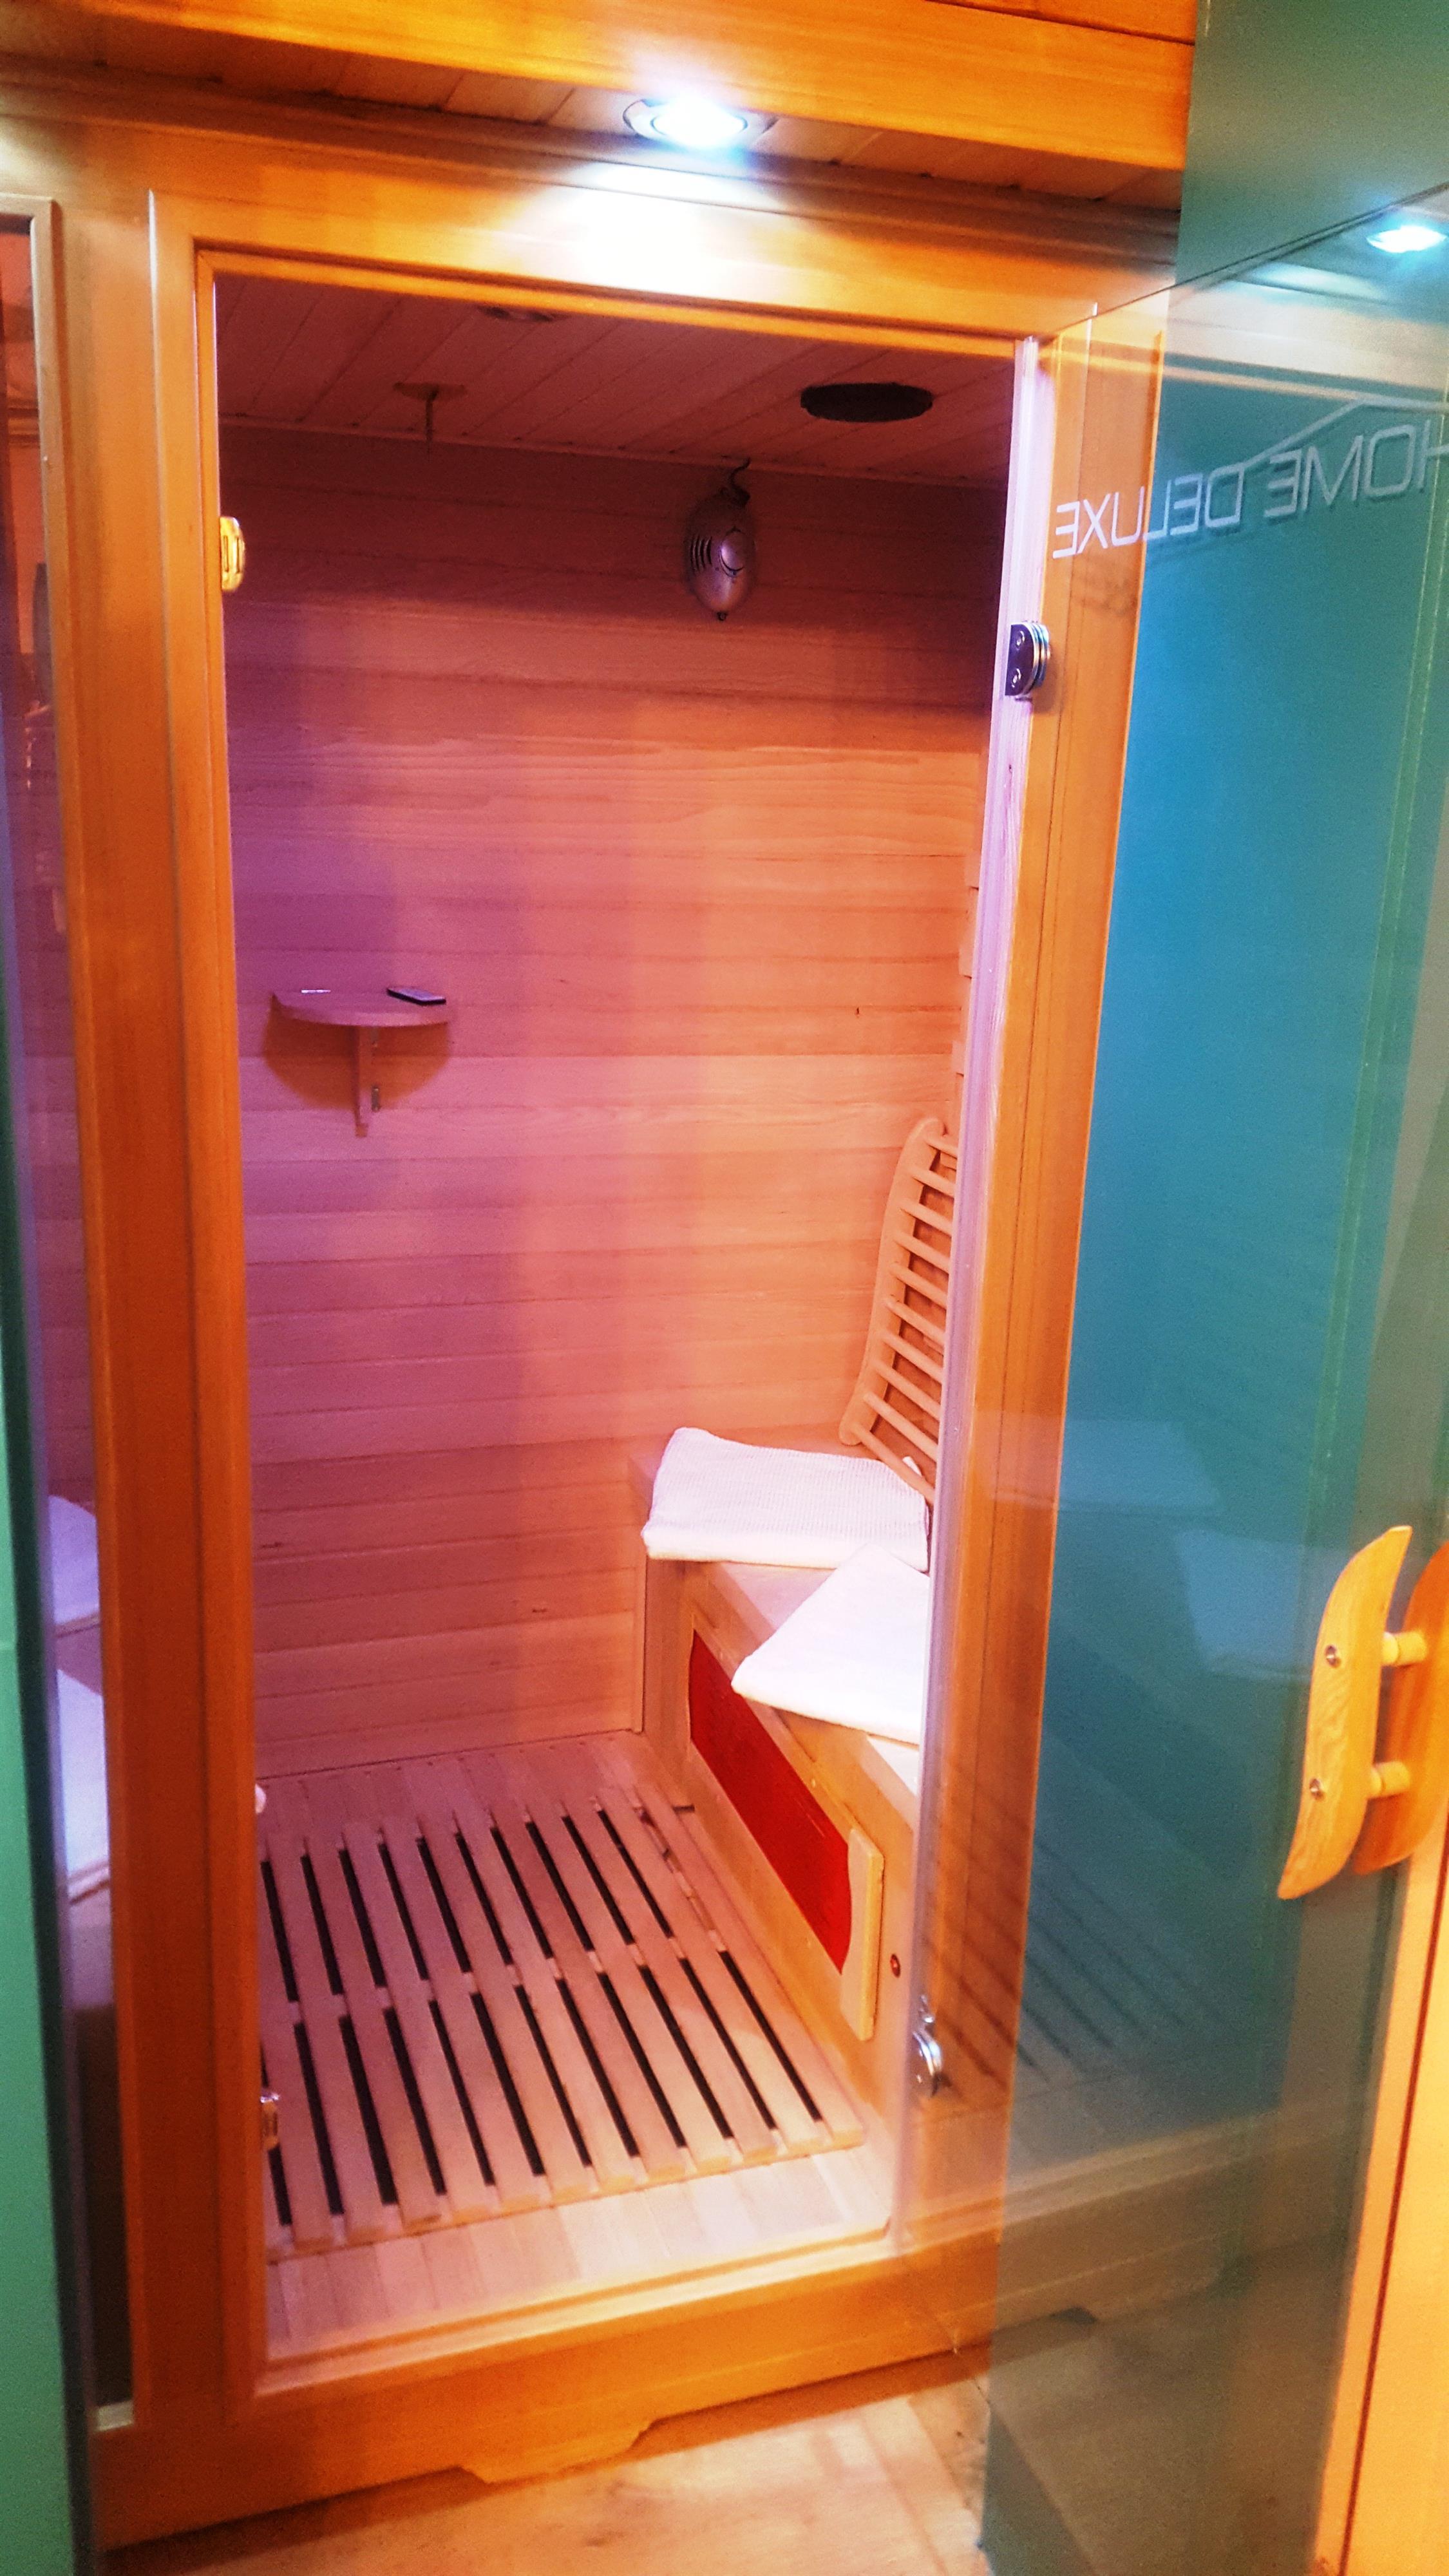 Infarot - Sauna zur eigenen Verfügung